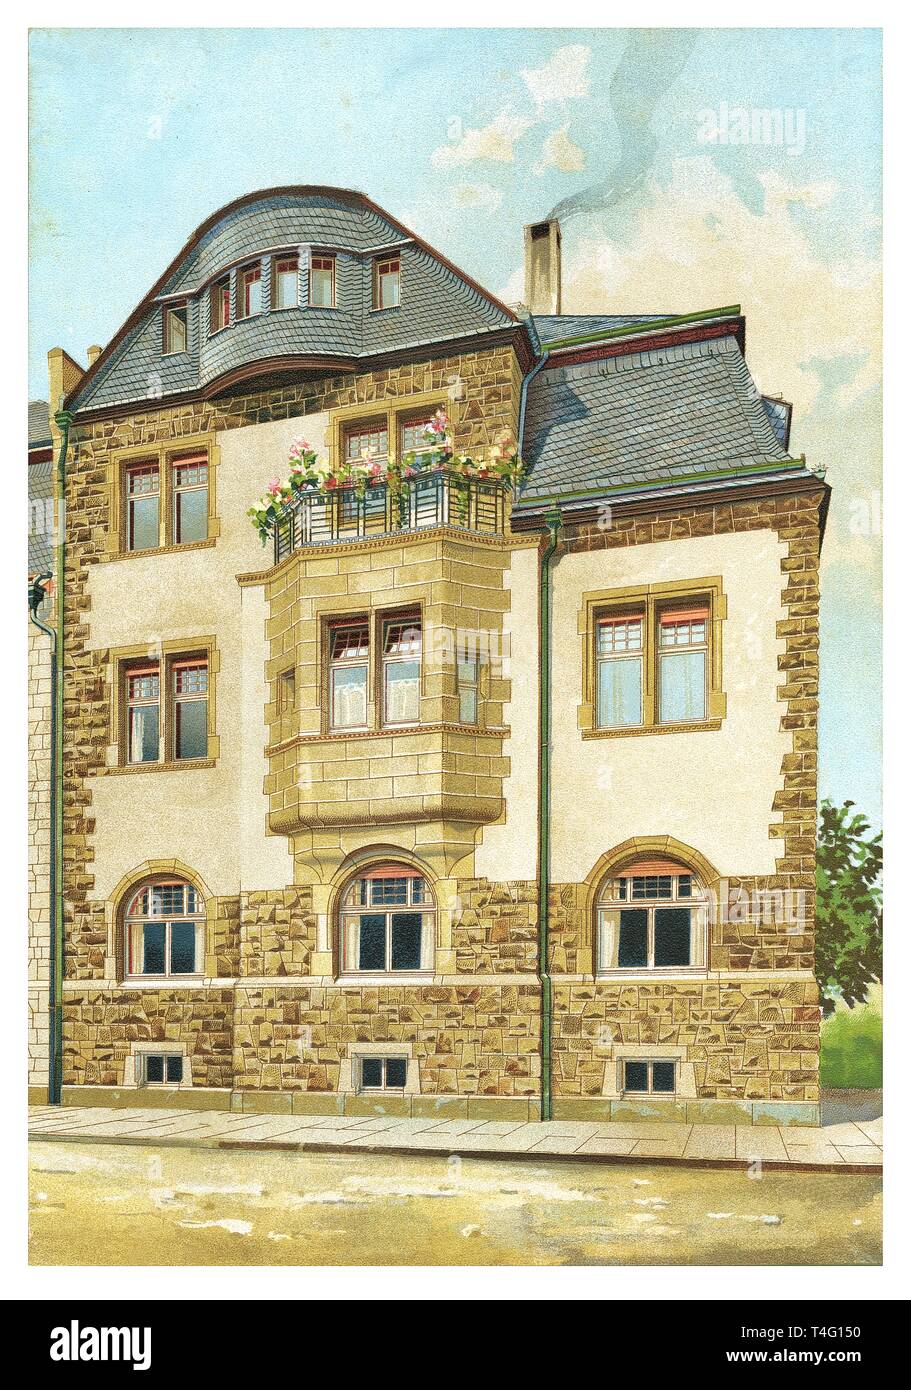 Casa Residencial en Colonia, Alemania - vintage ilustración grabada. Desde modernas casas urbanas, 1905 Foto de stock